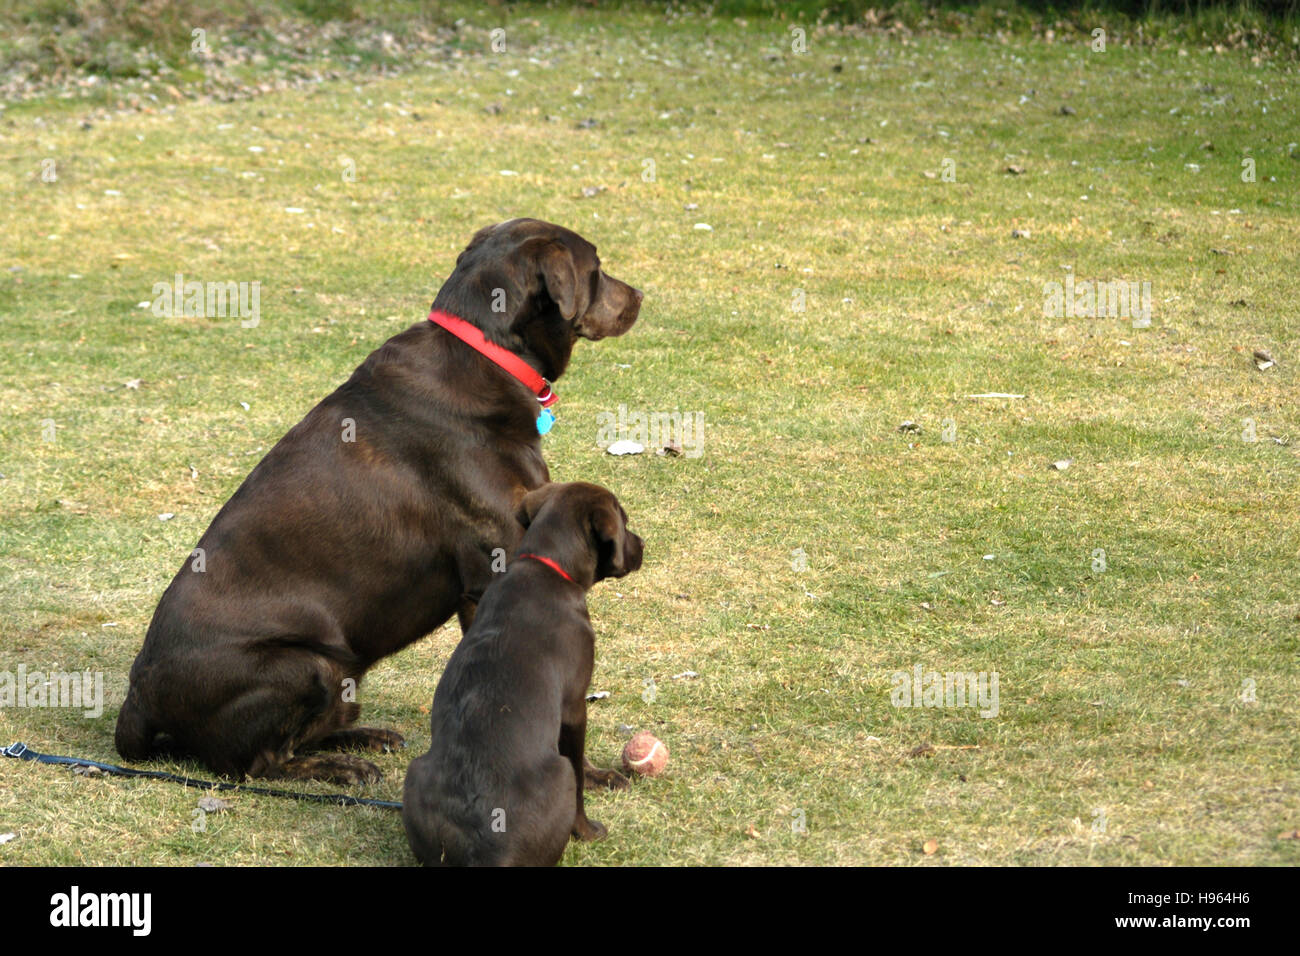 Chocolate Labrador Retriever dog and puppy Stock Photo